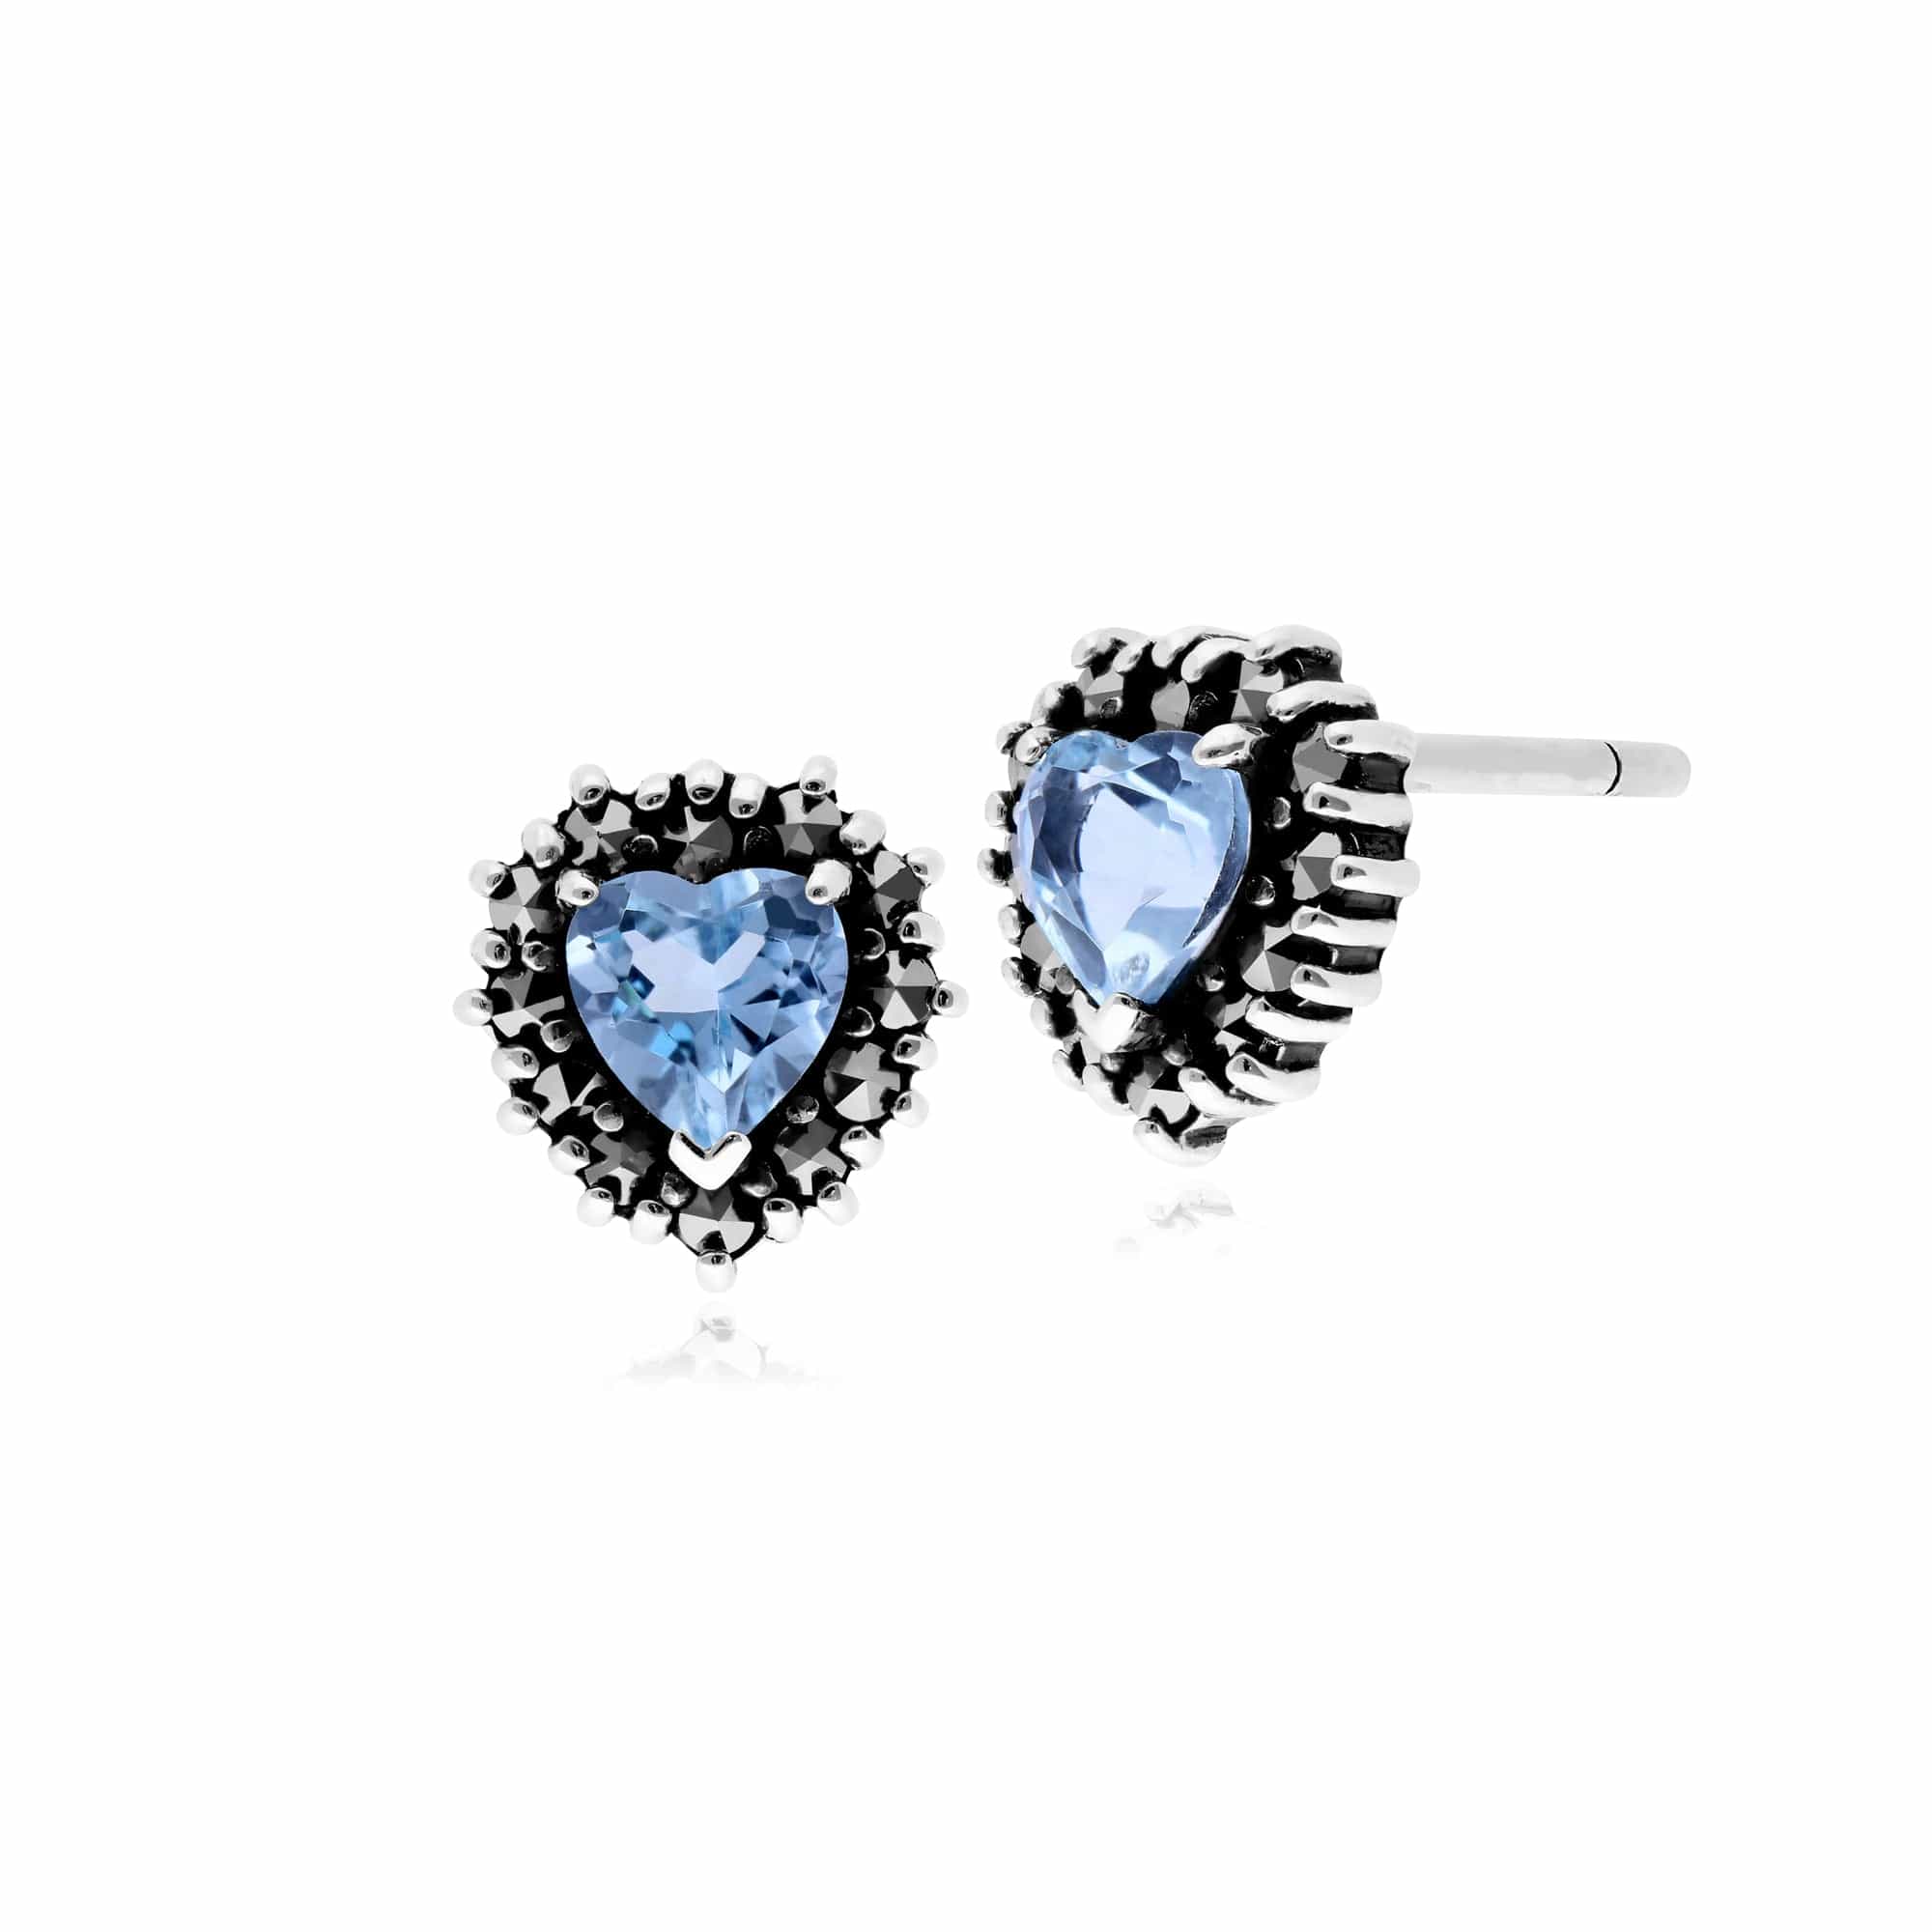 214E725704925 Classic Heart Blue Topaz & Marcasite Halo Heart Stud Earrings in 925 Sterling Silver 1